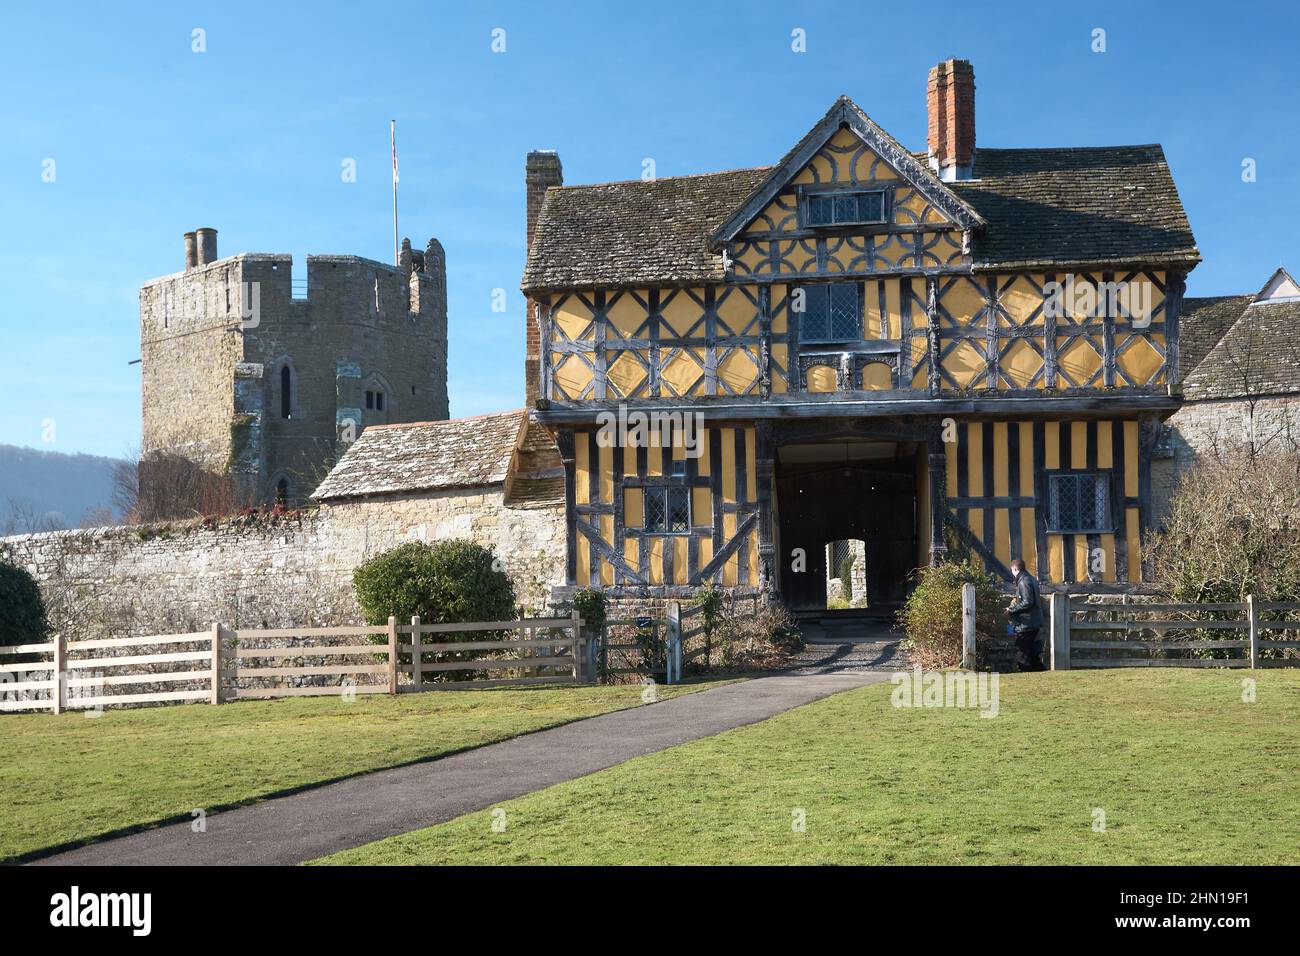 Stokesay, Shropshire, Angleterre, Grande-Bretagne. Fév 8th 2015, vue de la magnifique maison de Tudor sur le ciel bleu. Banque D'Images